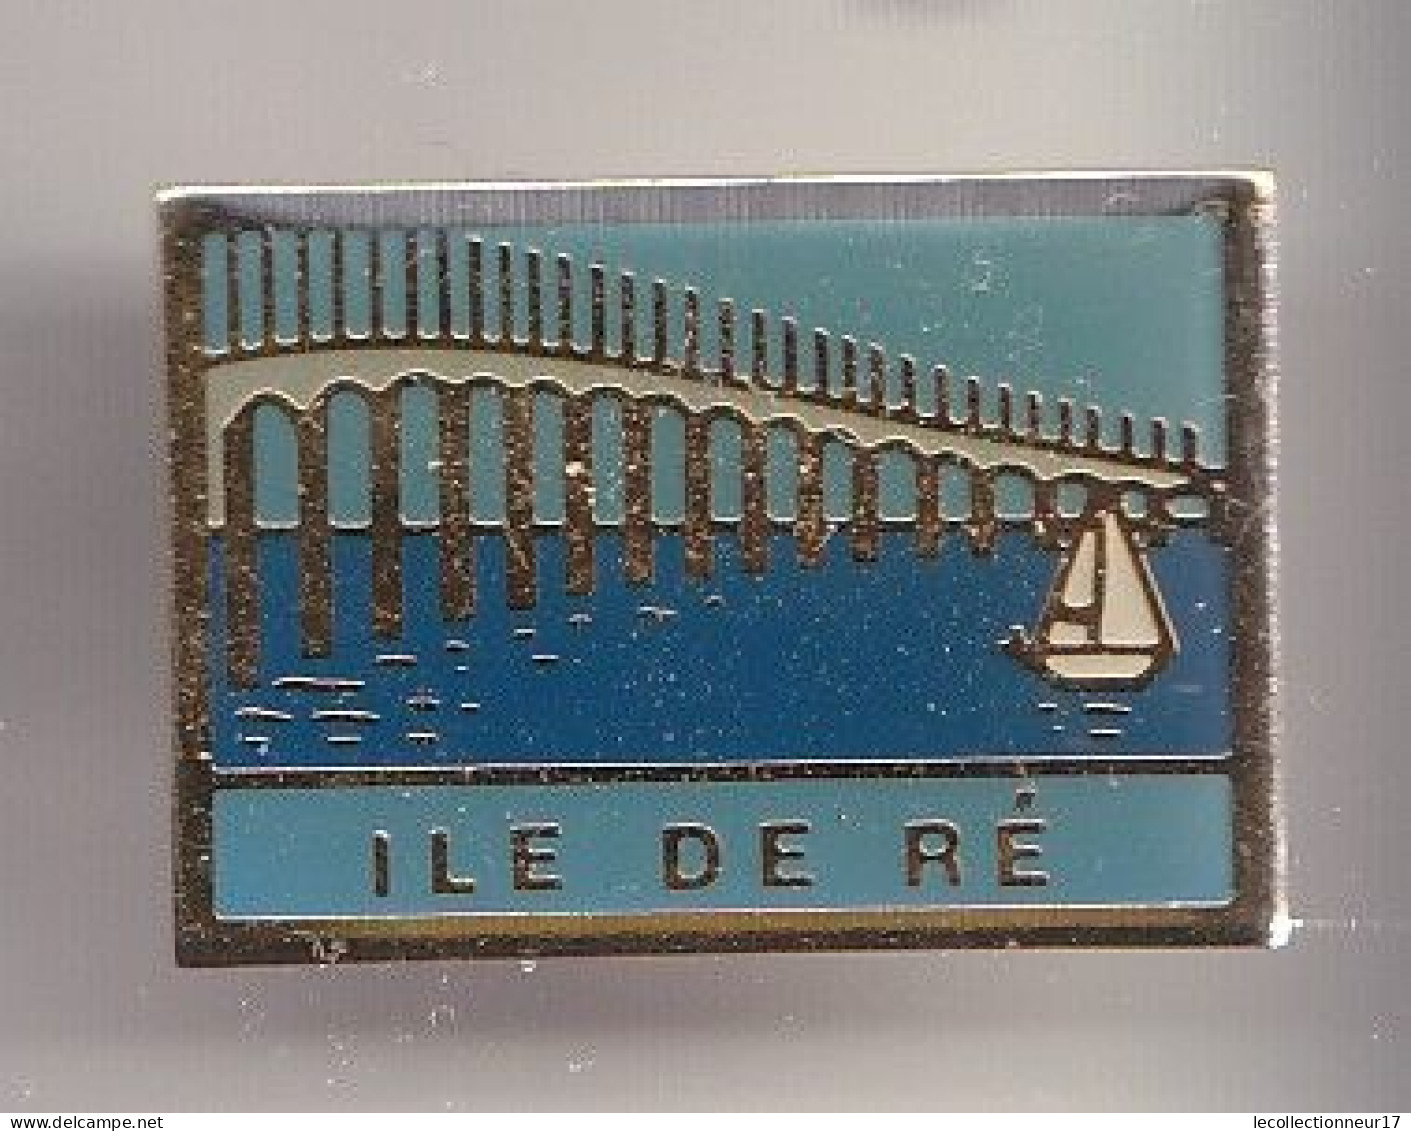 Pin's Ile De Ré En Charente Maritime Dpt 17  Réf 8328 - Cities